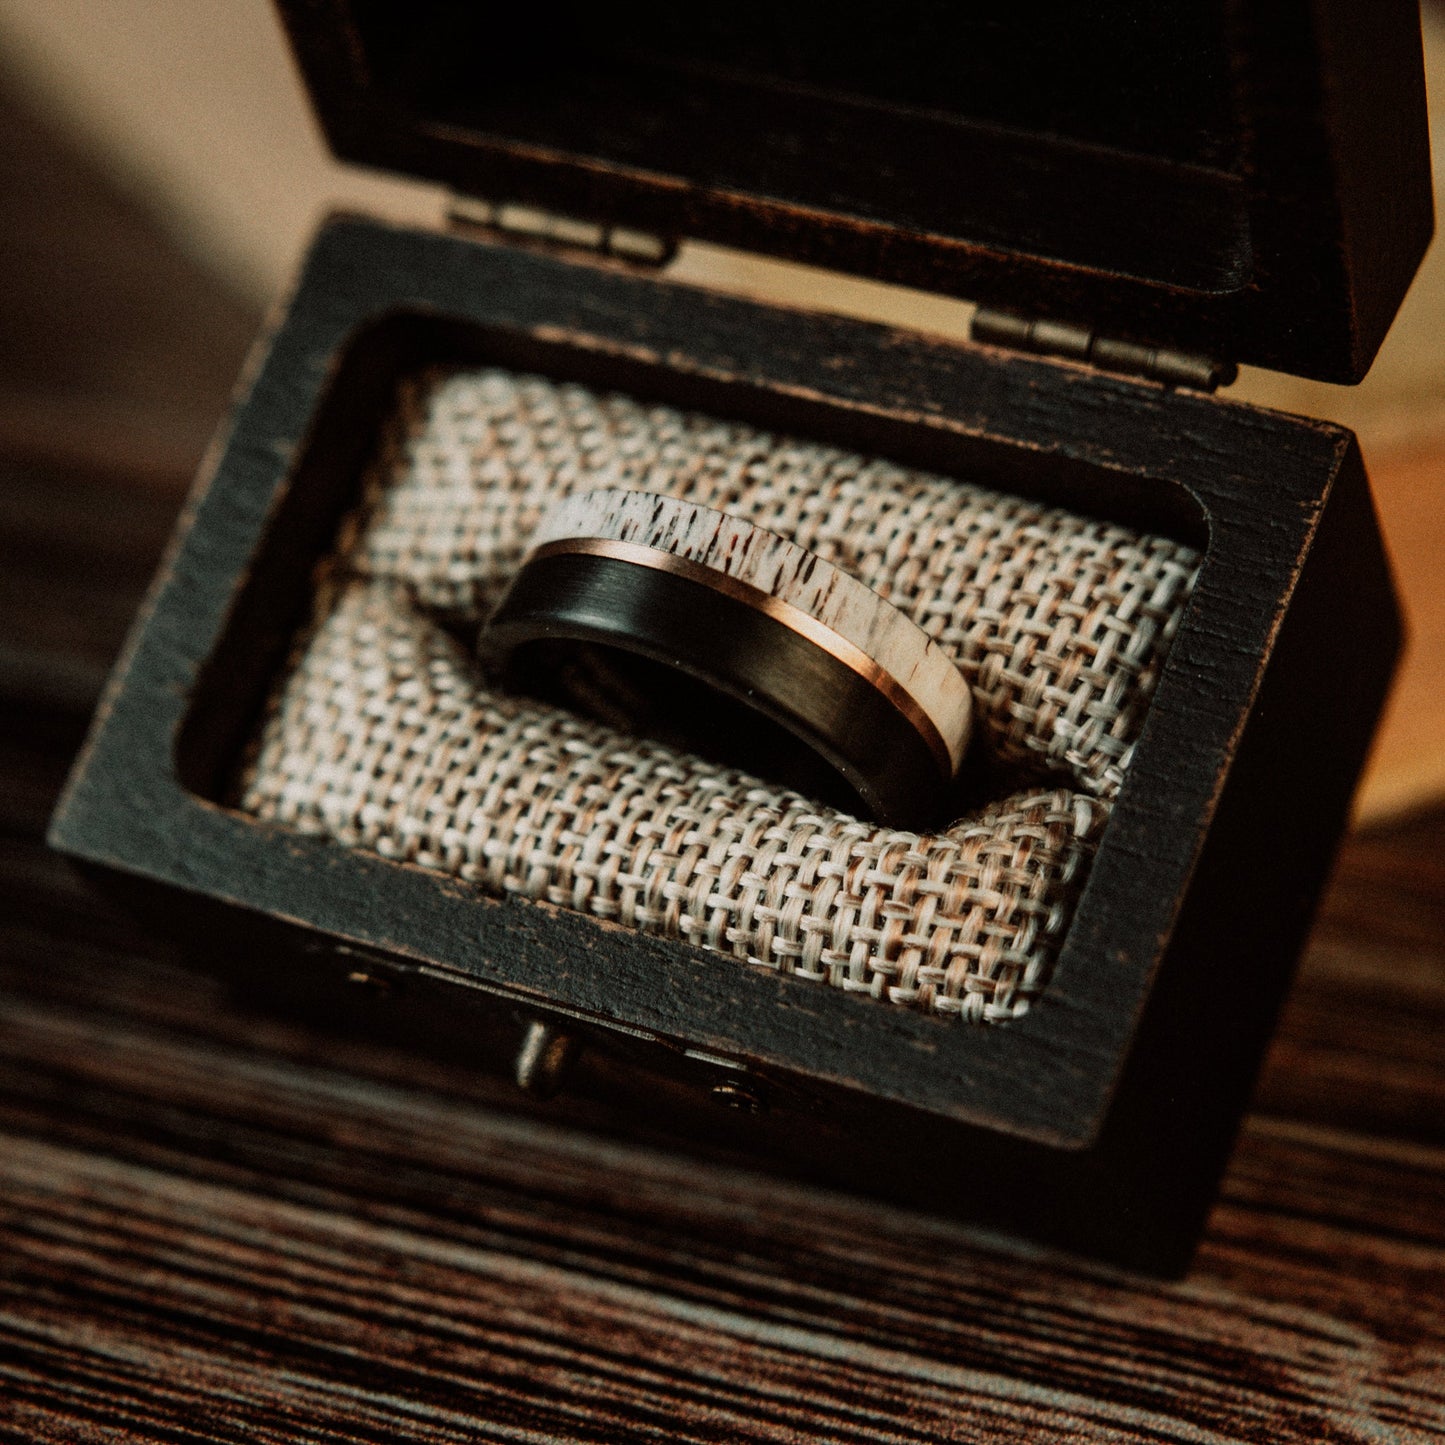 The “Frontiersman” Ring by Vintage Gentlemen